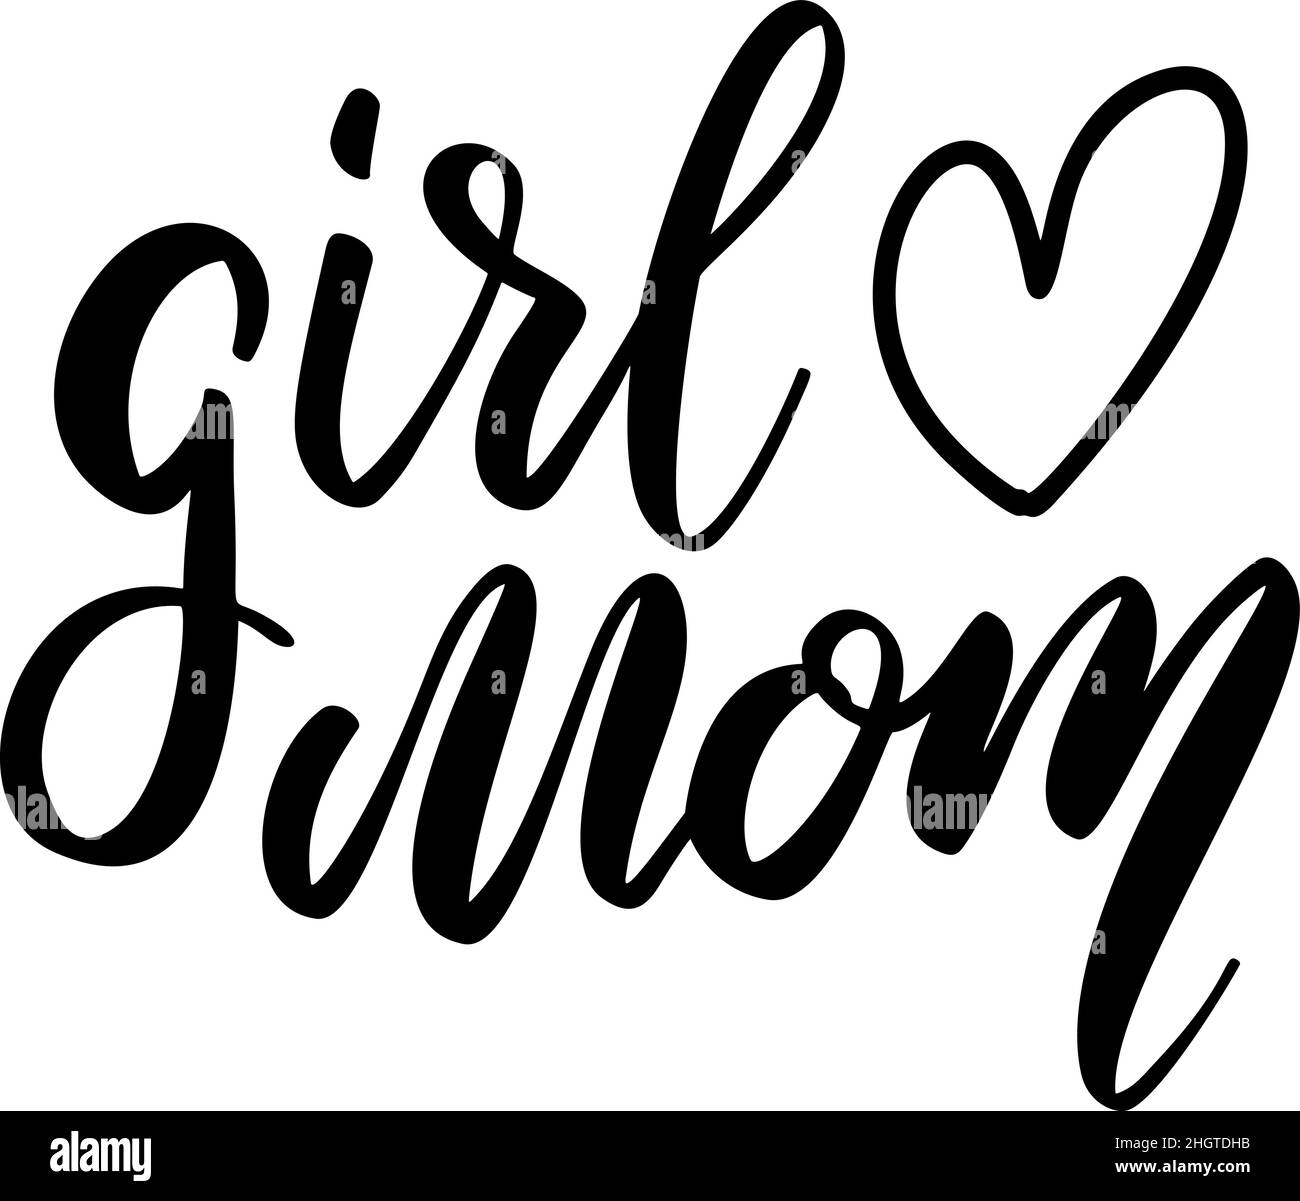 Girl love mom. Lettering phrase on white background. Design element for greeting card, t shirt, poster. Vector illustration Stock Vector